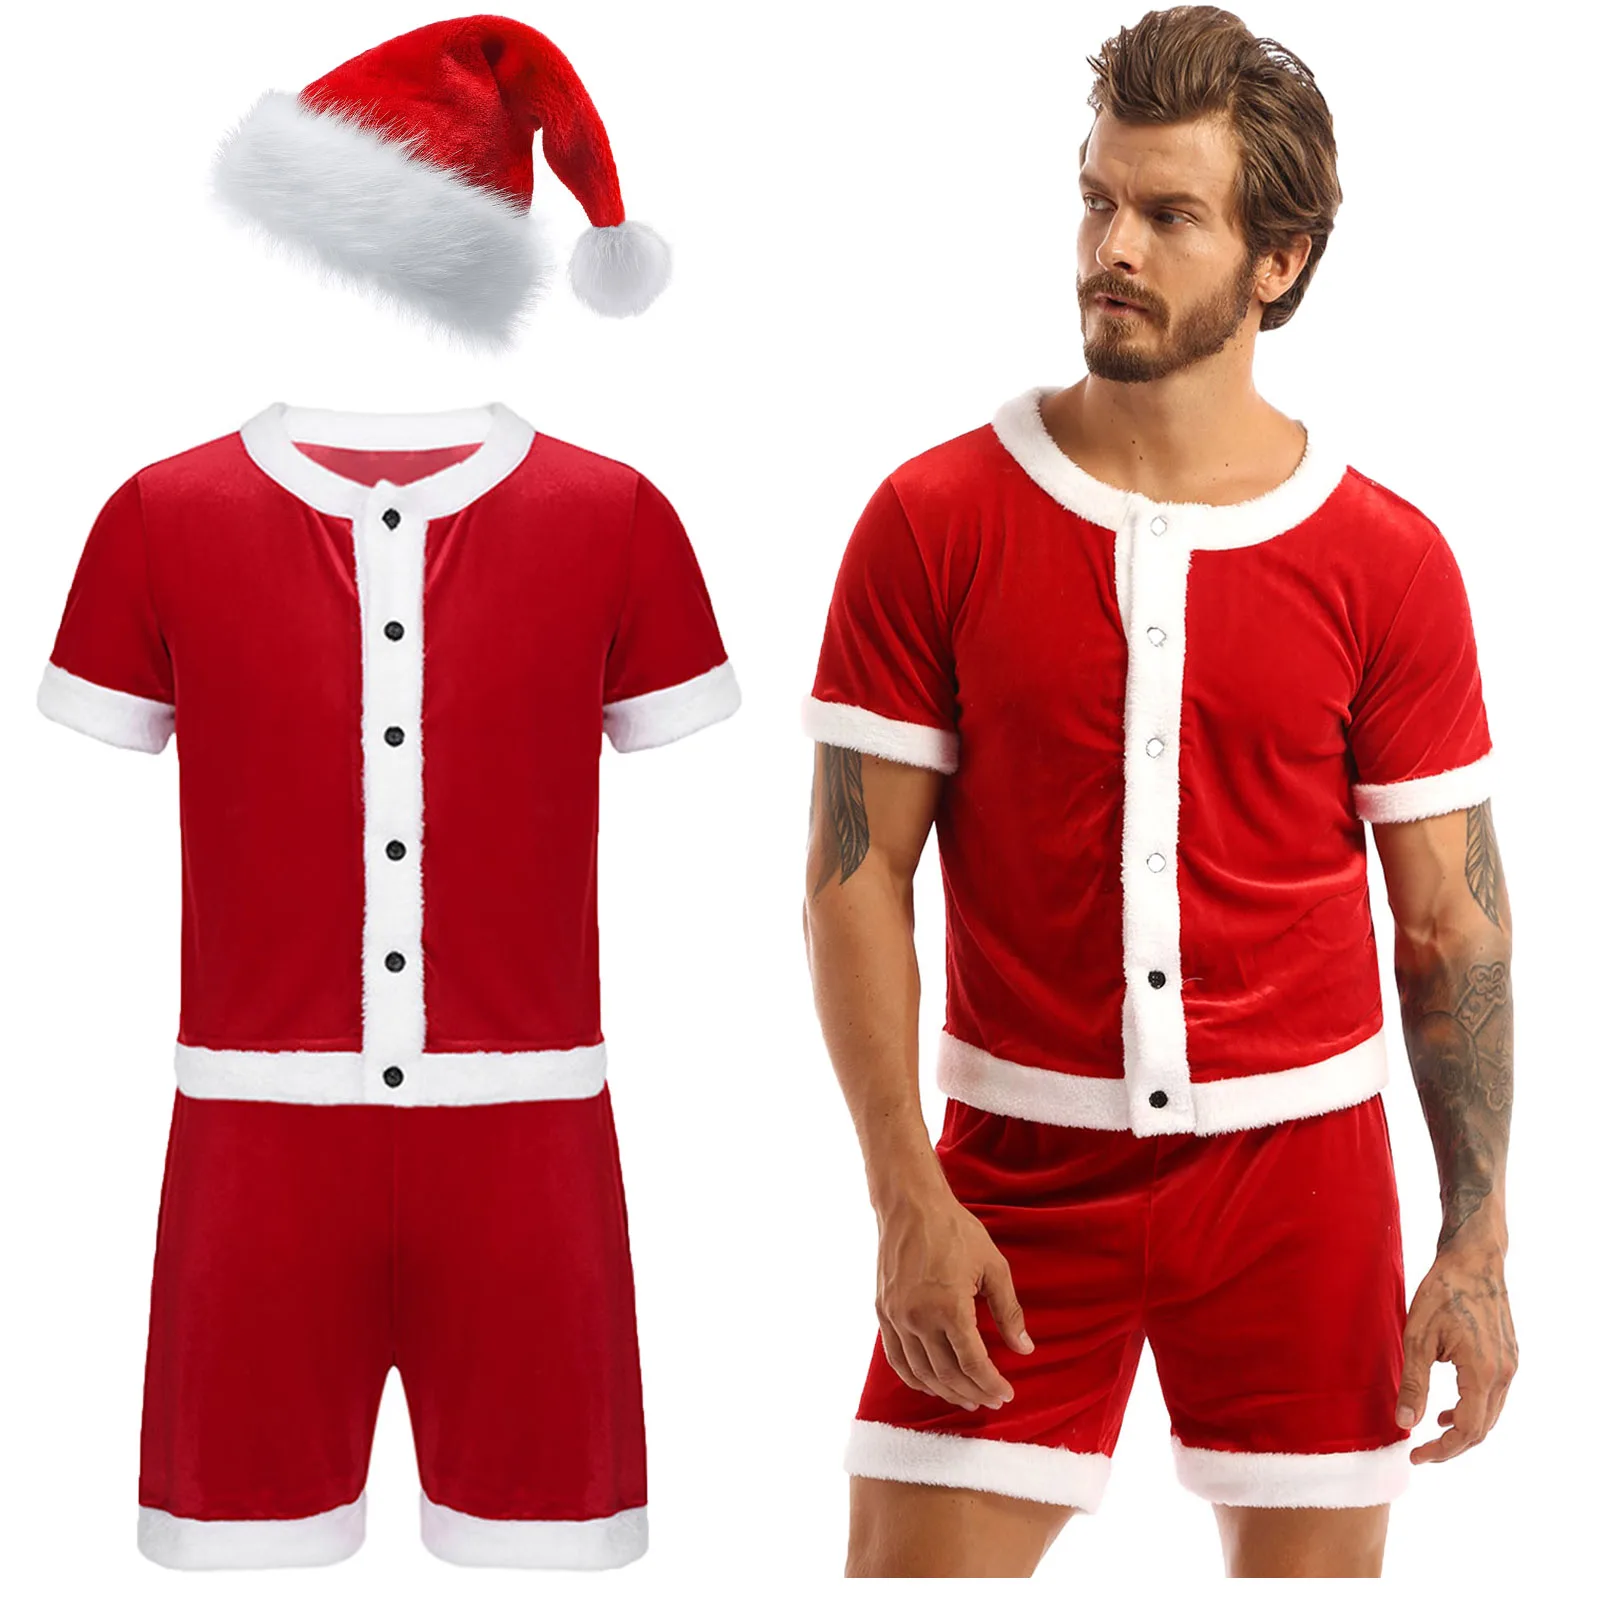 

Мужской Рождественский костюм Санта-Клауса для ролевых игр, необычное платье, костюм для косплея, наряд для вечеринки, футболка, шорты с рождественской шапкой